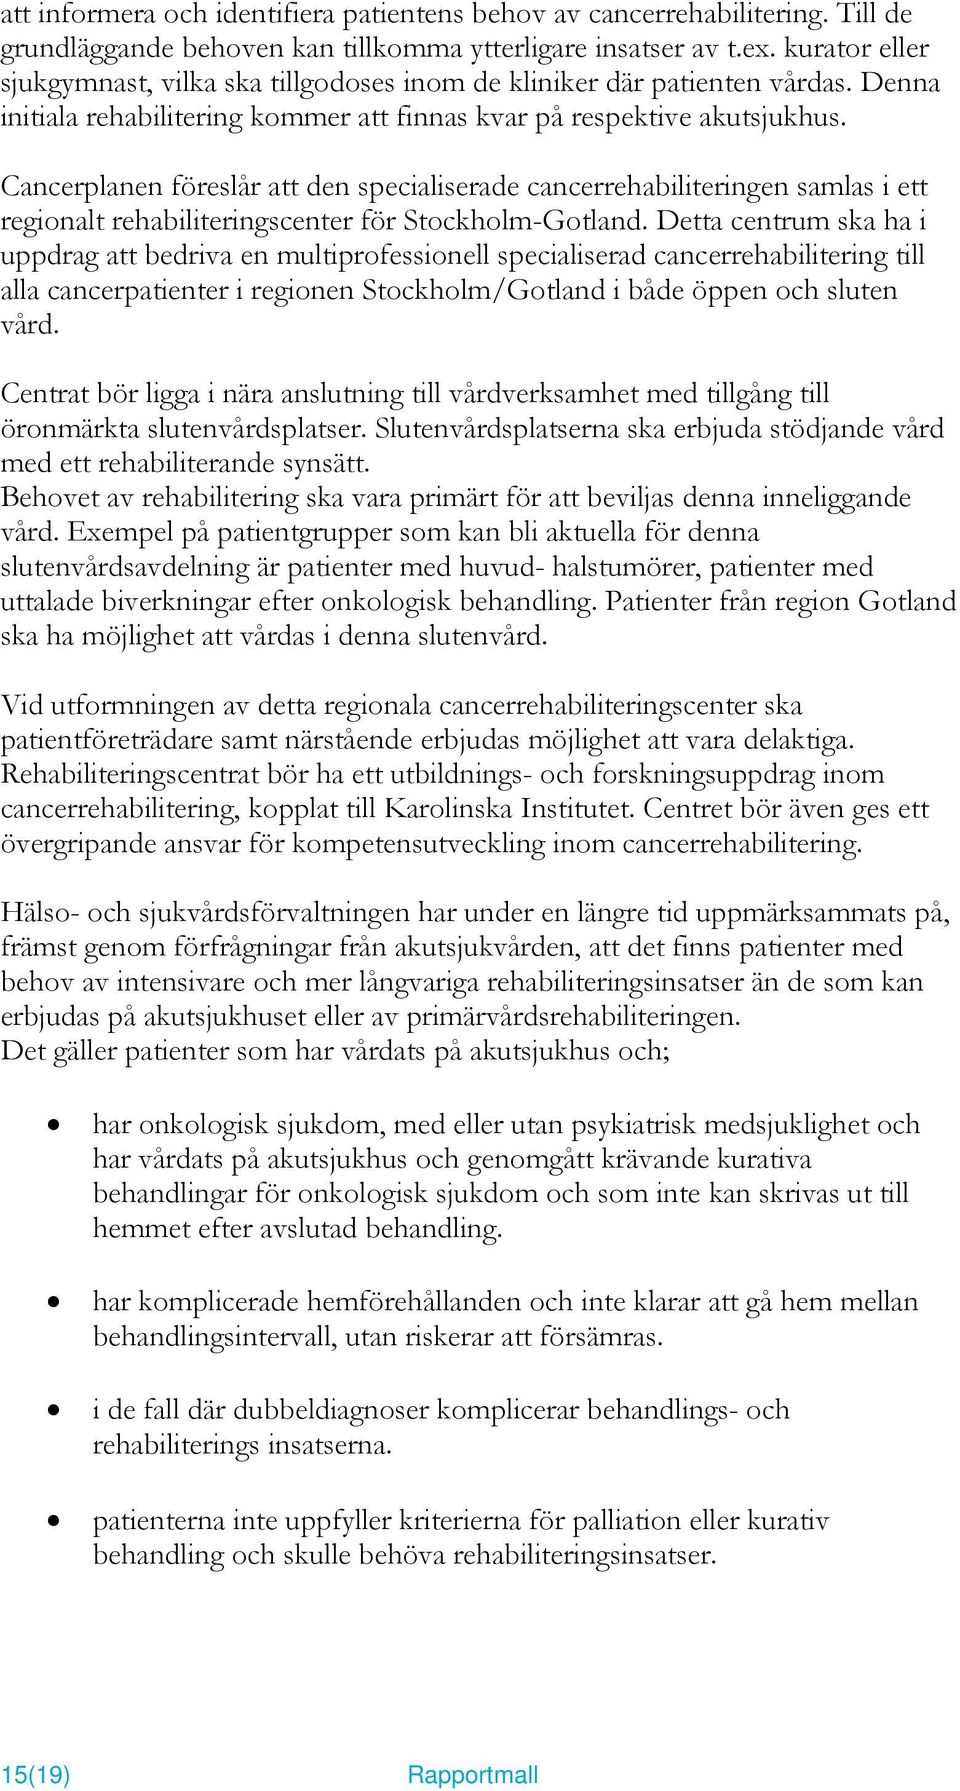 Cancerplanen föreslår att den specialiserade cancerrehabiliteringen samlas i ett regionalt rehabiliteringscenter för Stockholm-Gotland.